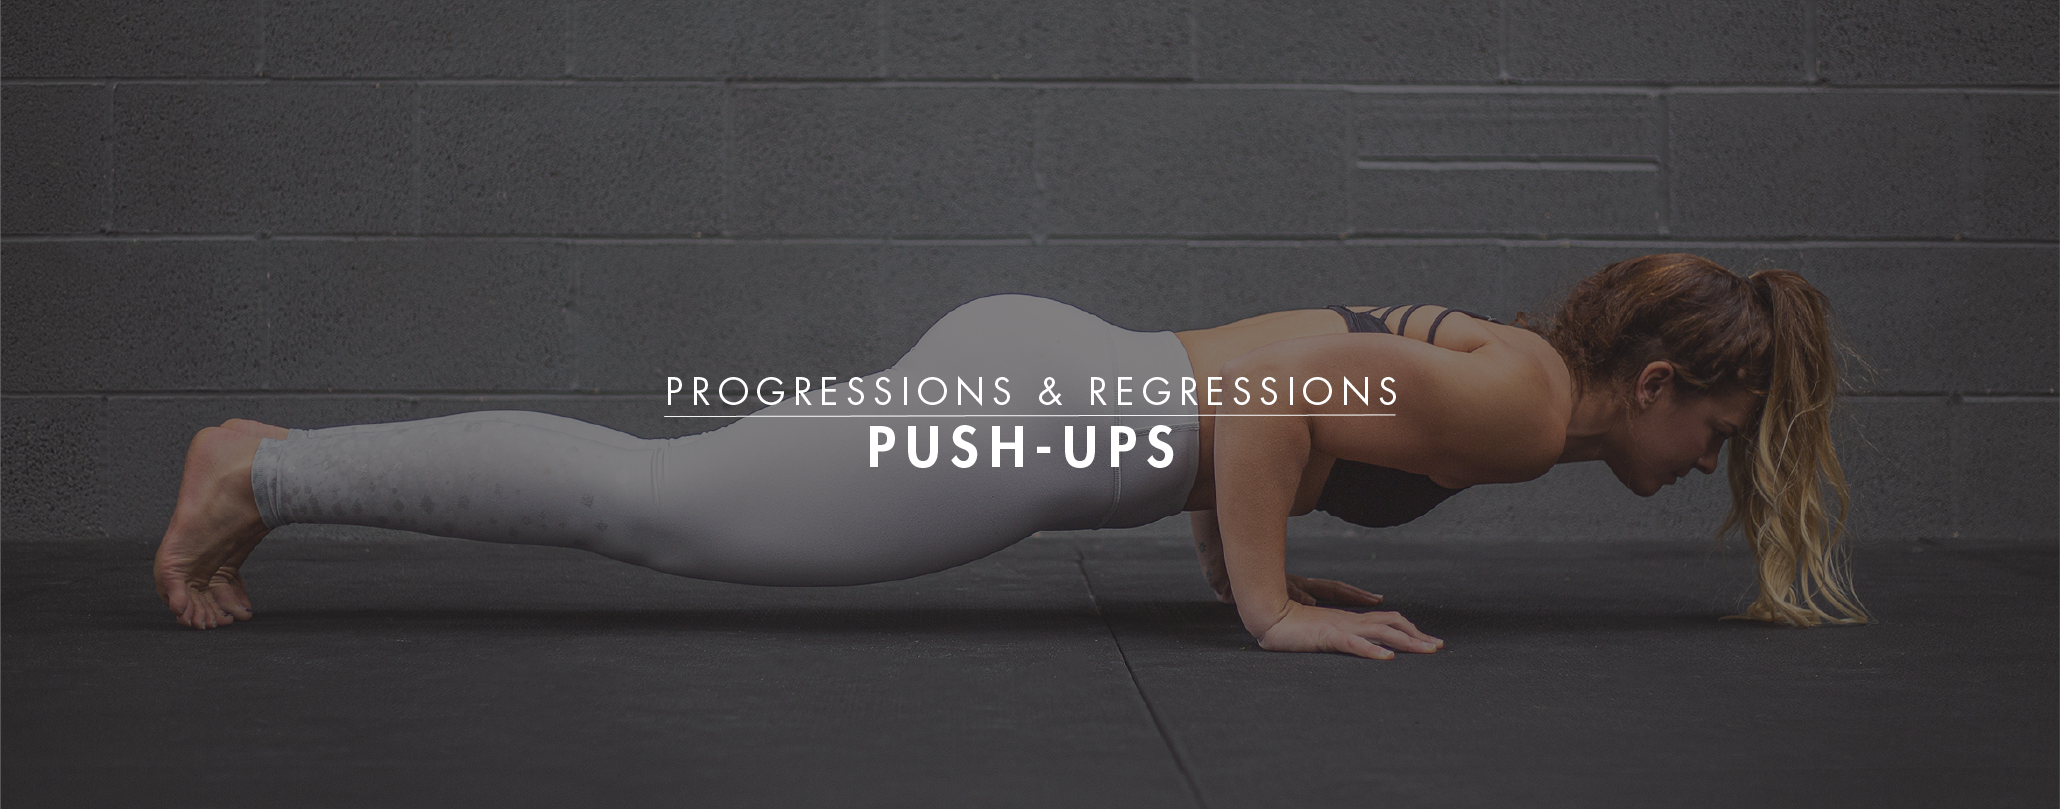 Progressions & Regressions: Push-Ups